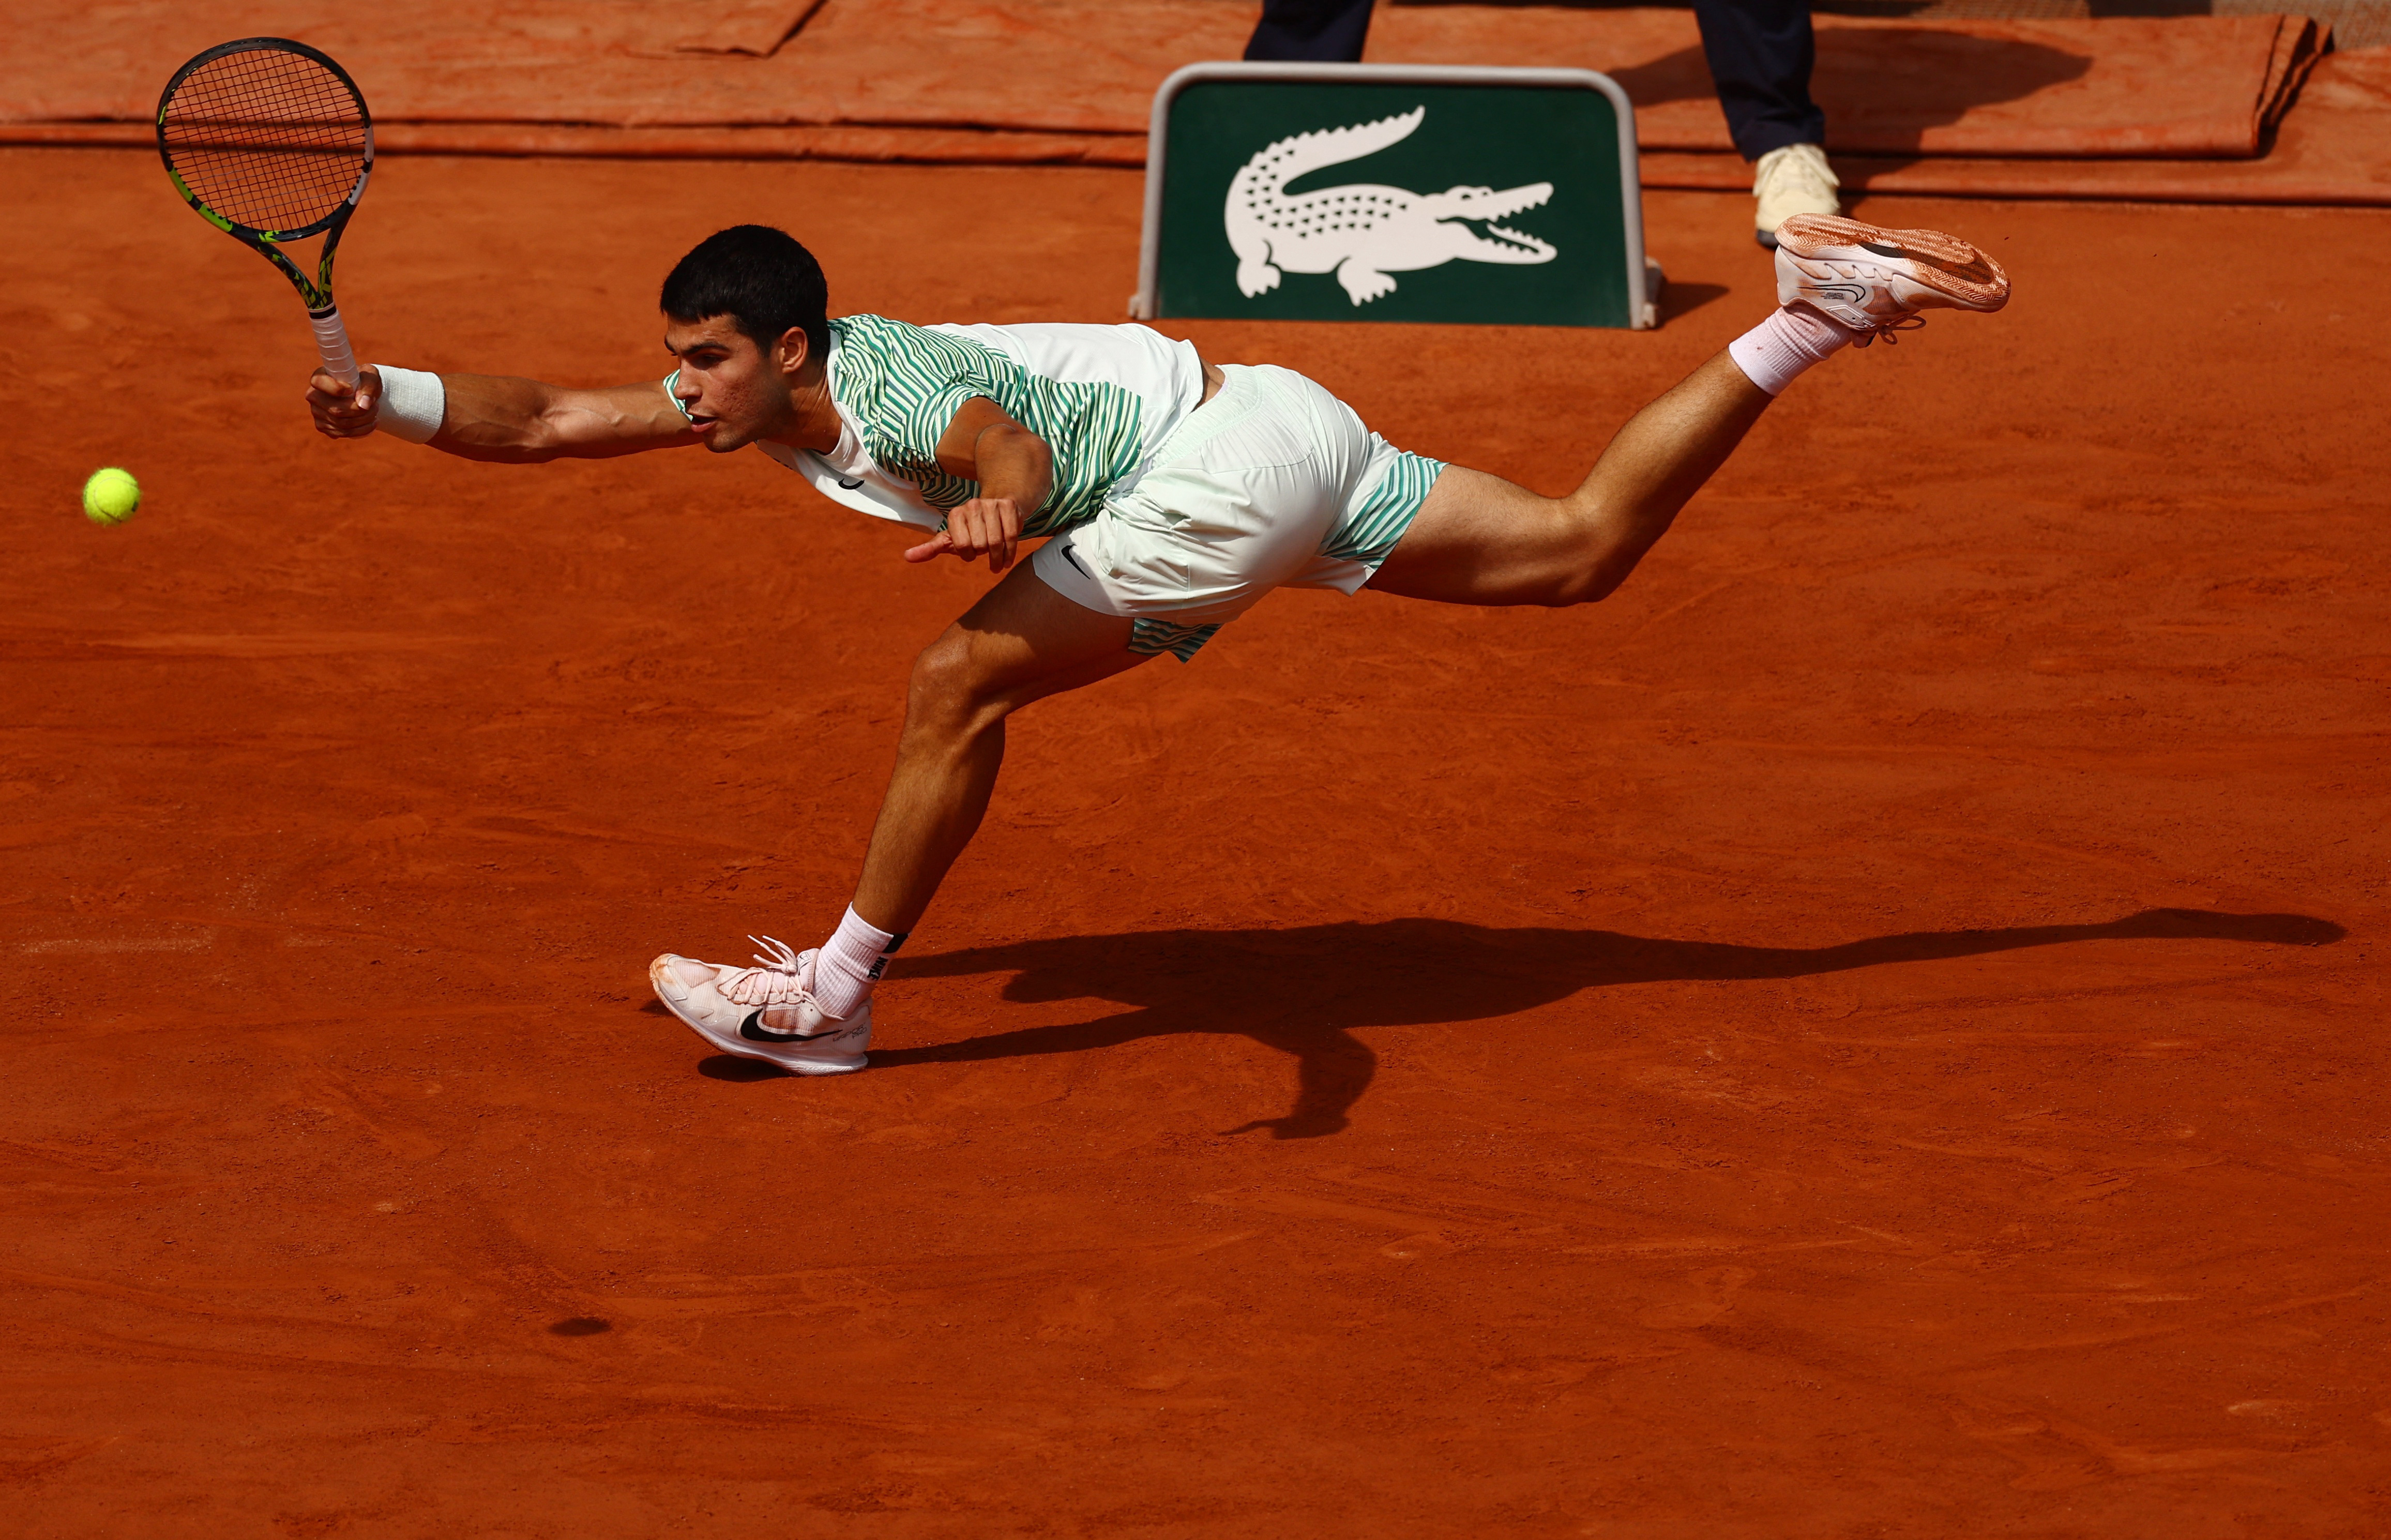 Alcaraz-Djokovic en Roland Garros, en directo: sigue en vivo la remontada de Alcaraz tras ganar el segundo set